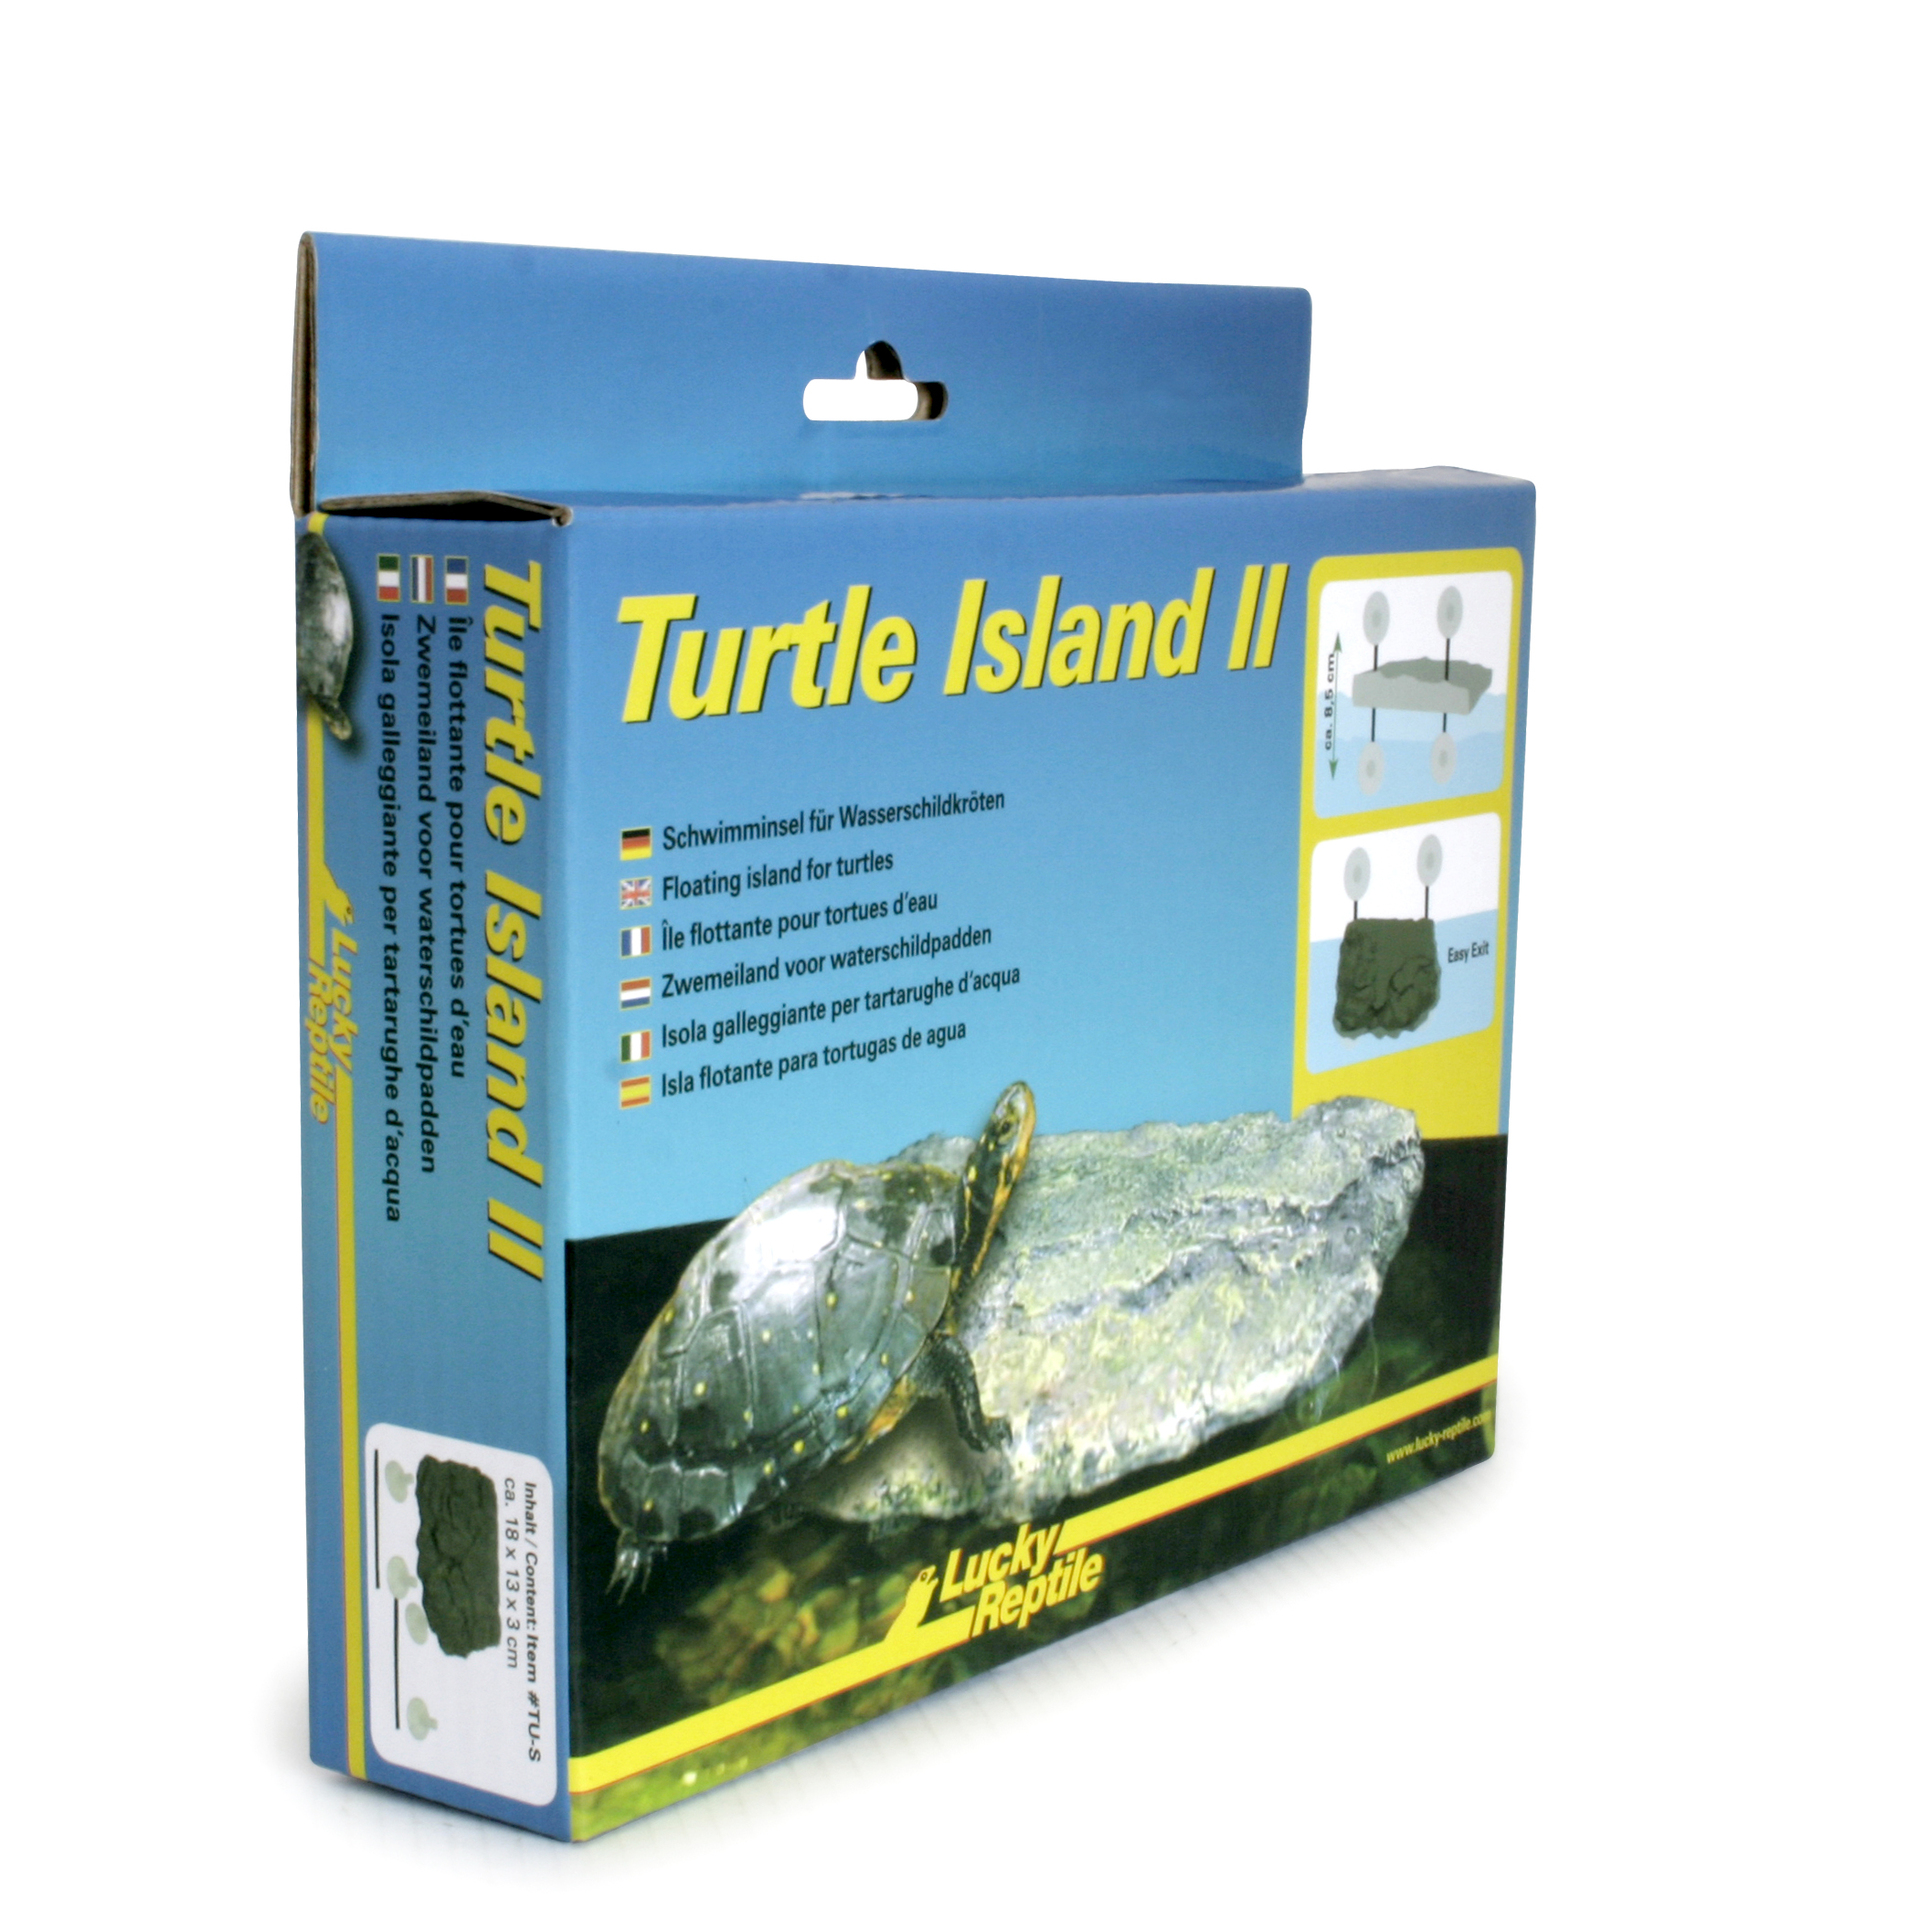 Turtle Island II